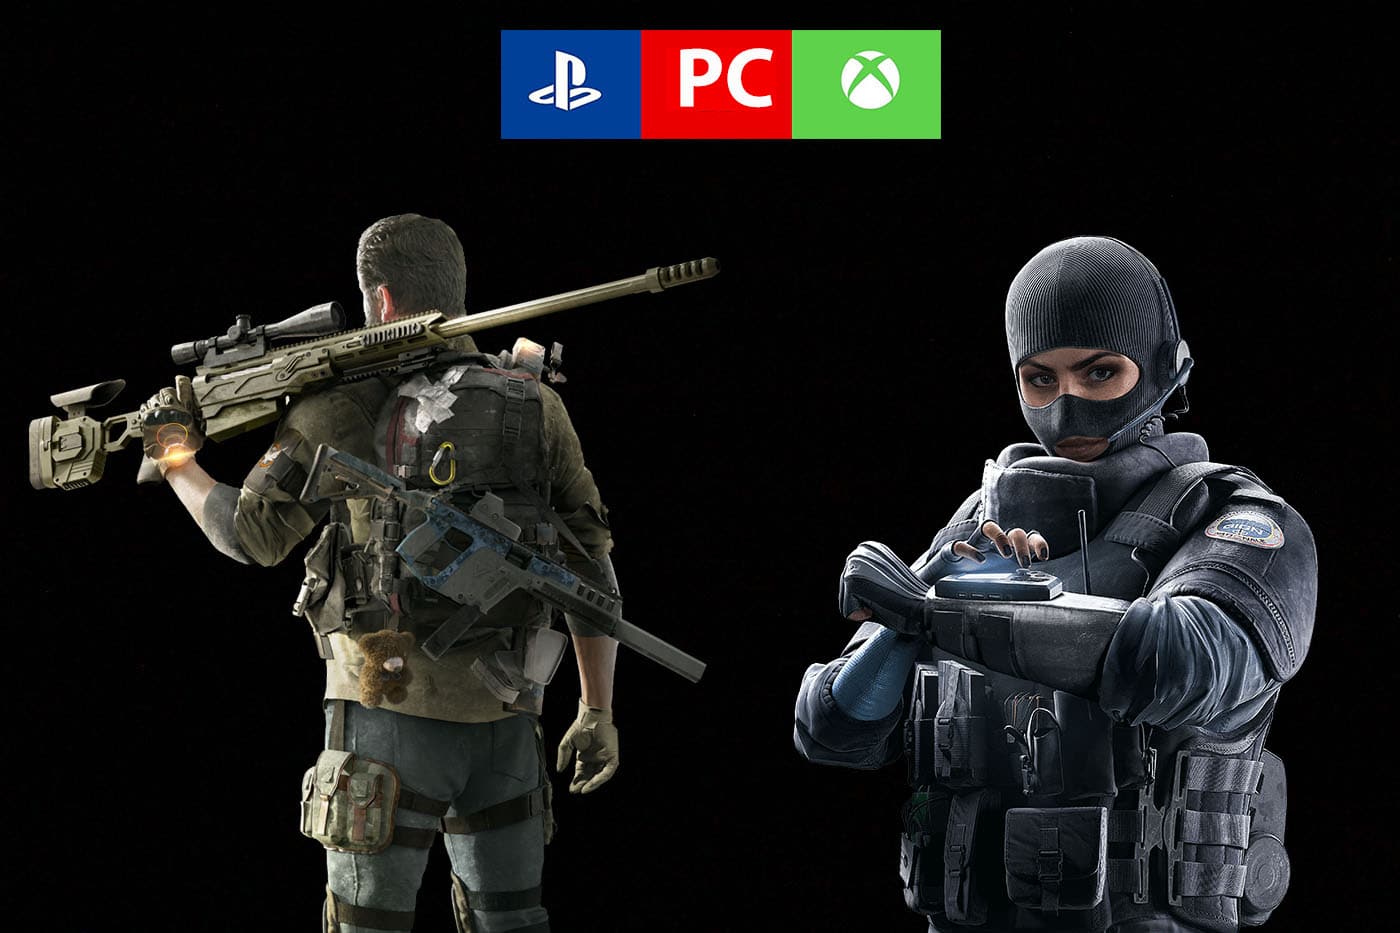 Ubisoft quiere llevar el cross-play a juegos como Rainbow Six Siege y The Division 2, gAMERSrd